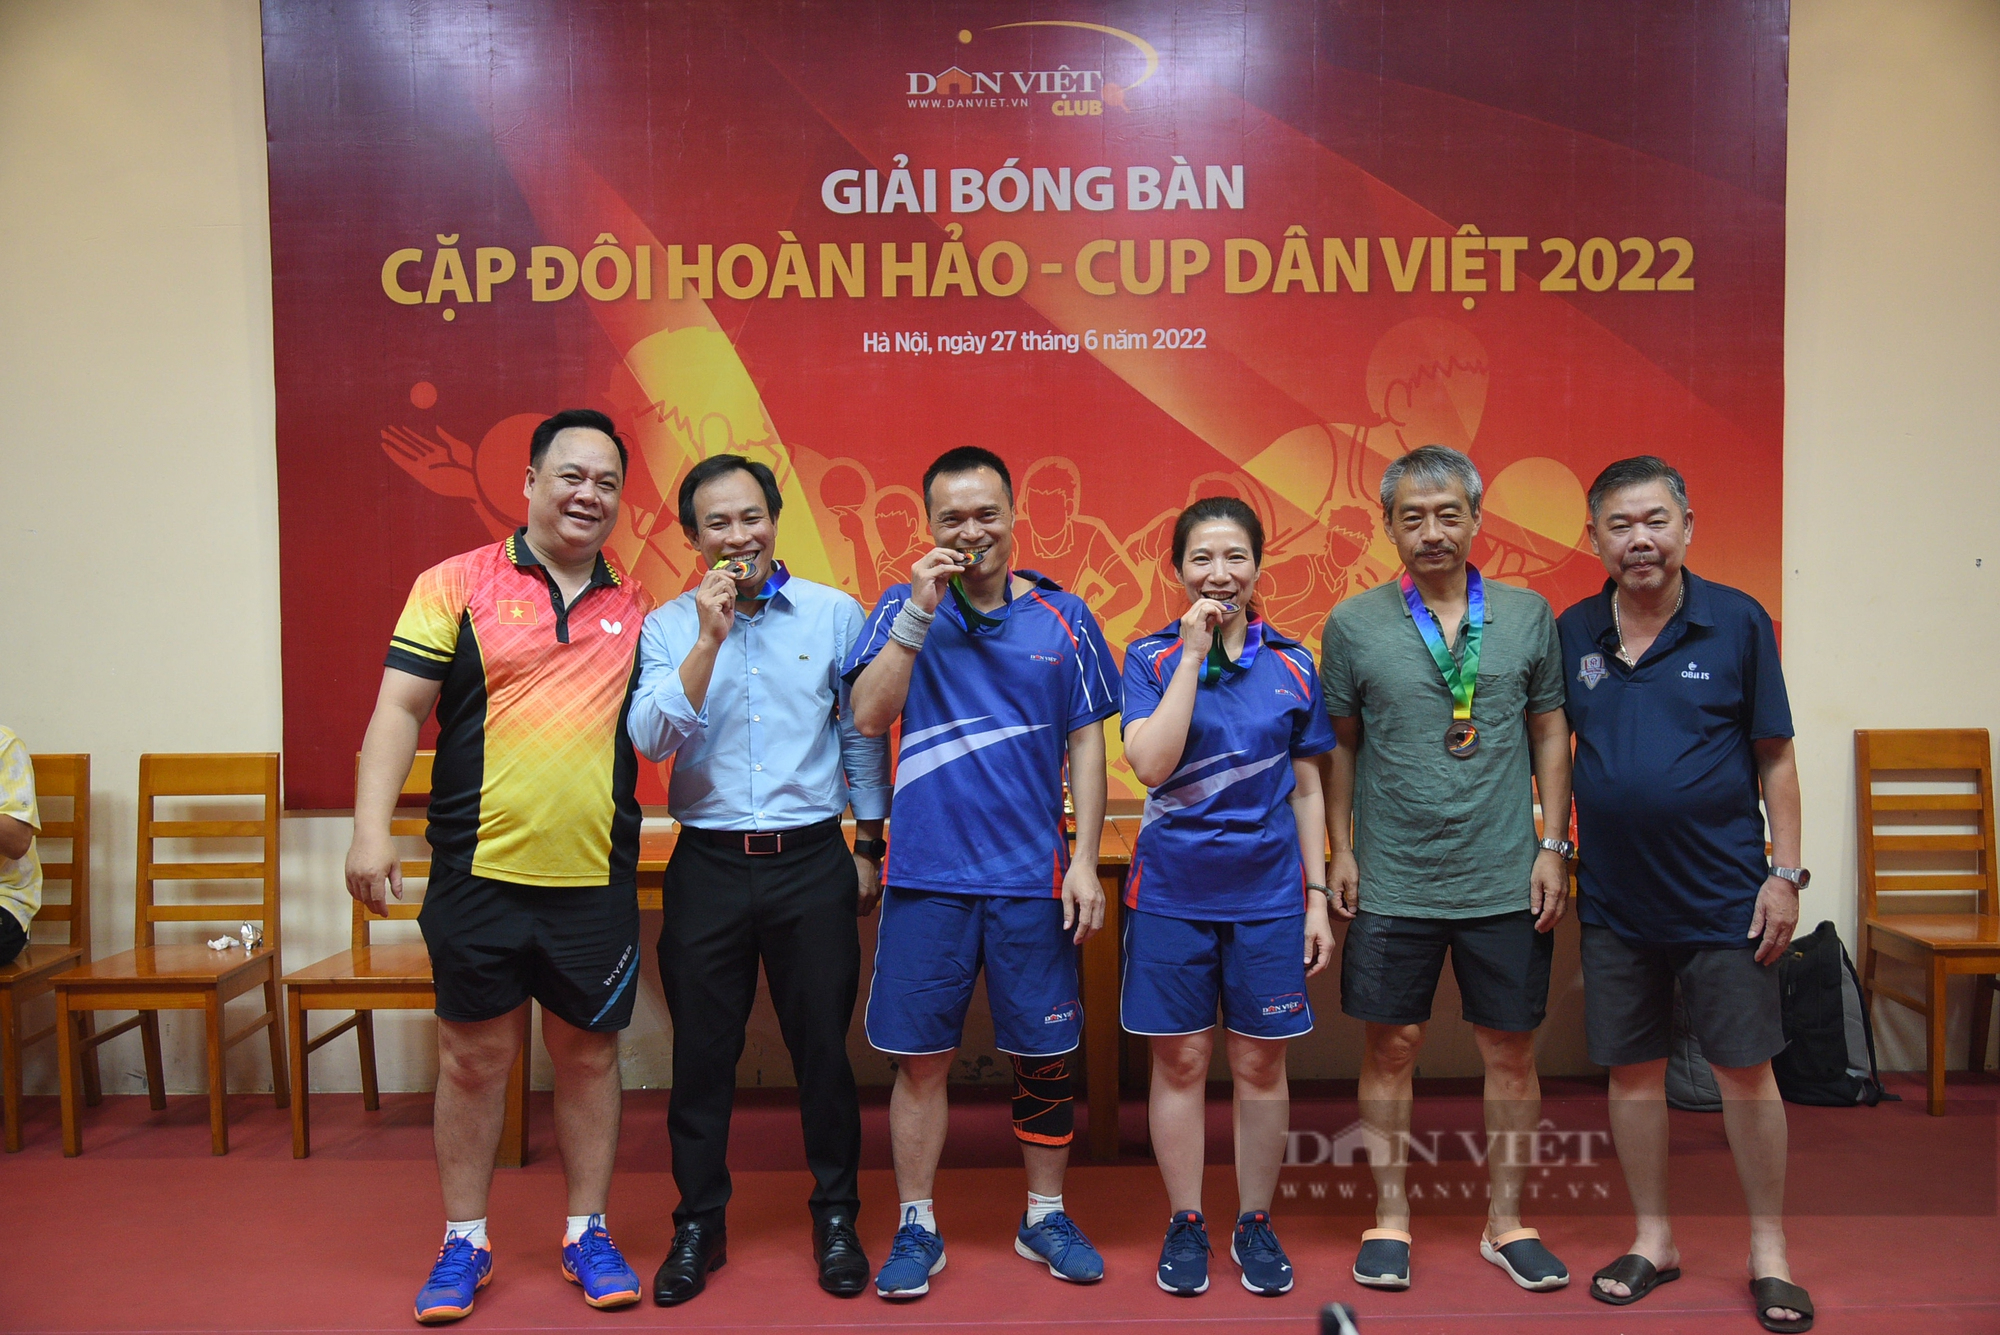 Muôn vàn cảm xúc tại giải bóng bàn Cặp đôi hoàn hảo - Cup Dân Việt 2022 - Ảnh 9.